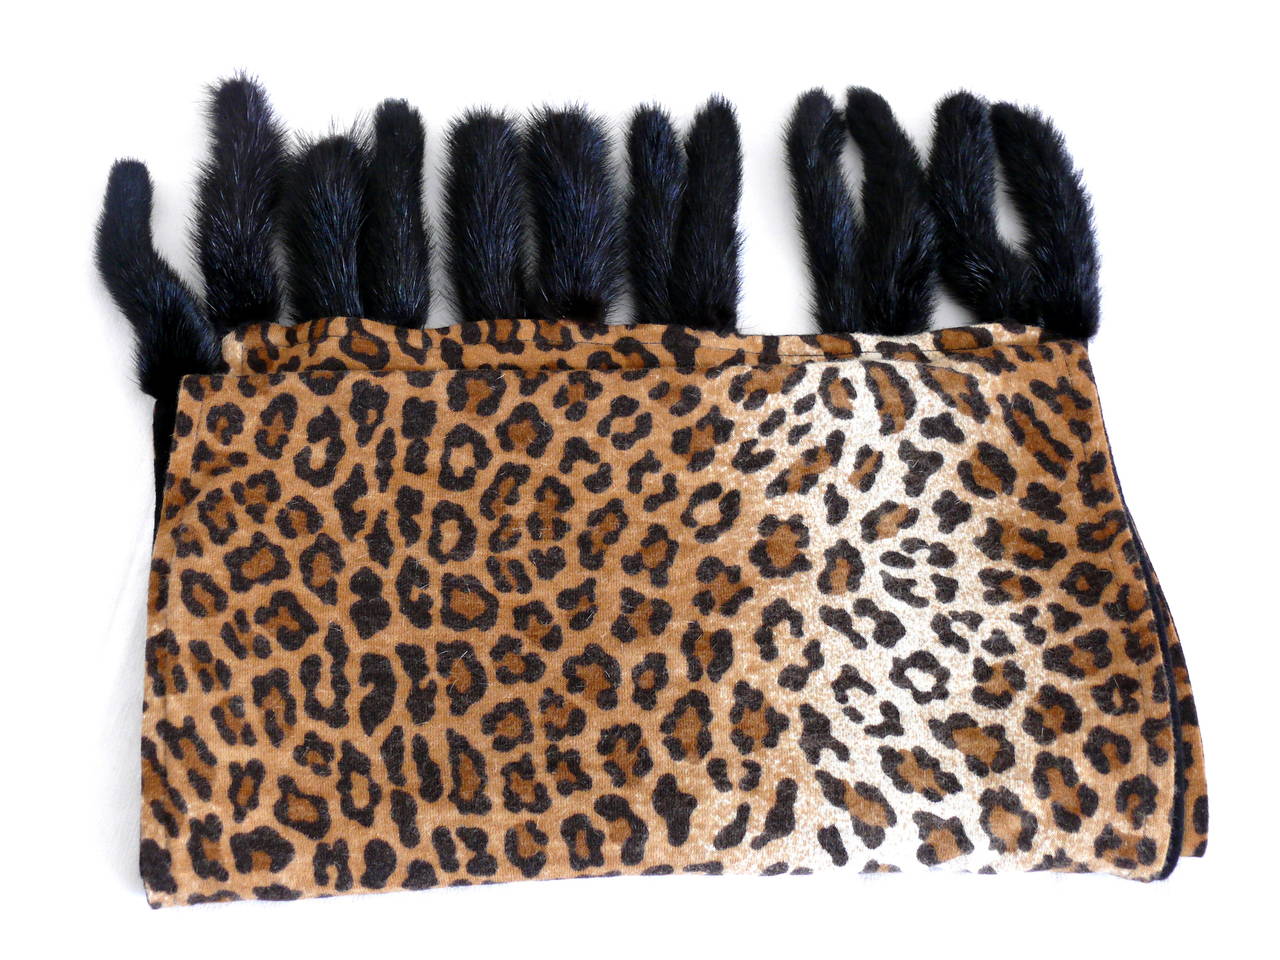 ISADORA Paris - Magnifique étole en faux léopard avec des queues de fourrure noire aux deux extrémités.

Le Label indique IDADORA Paris.

L'étiquette de composition indique : 50 % laine / 30 % polyamide / 20 % angora.

Mesures indicatives :